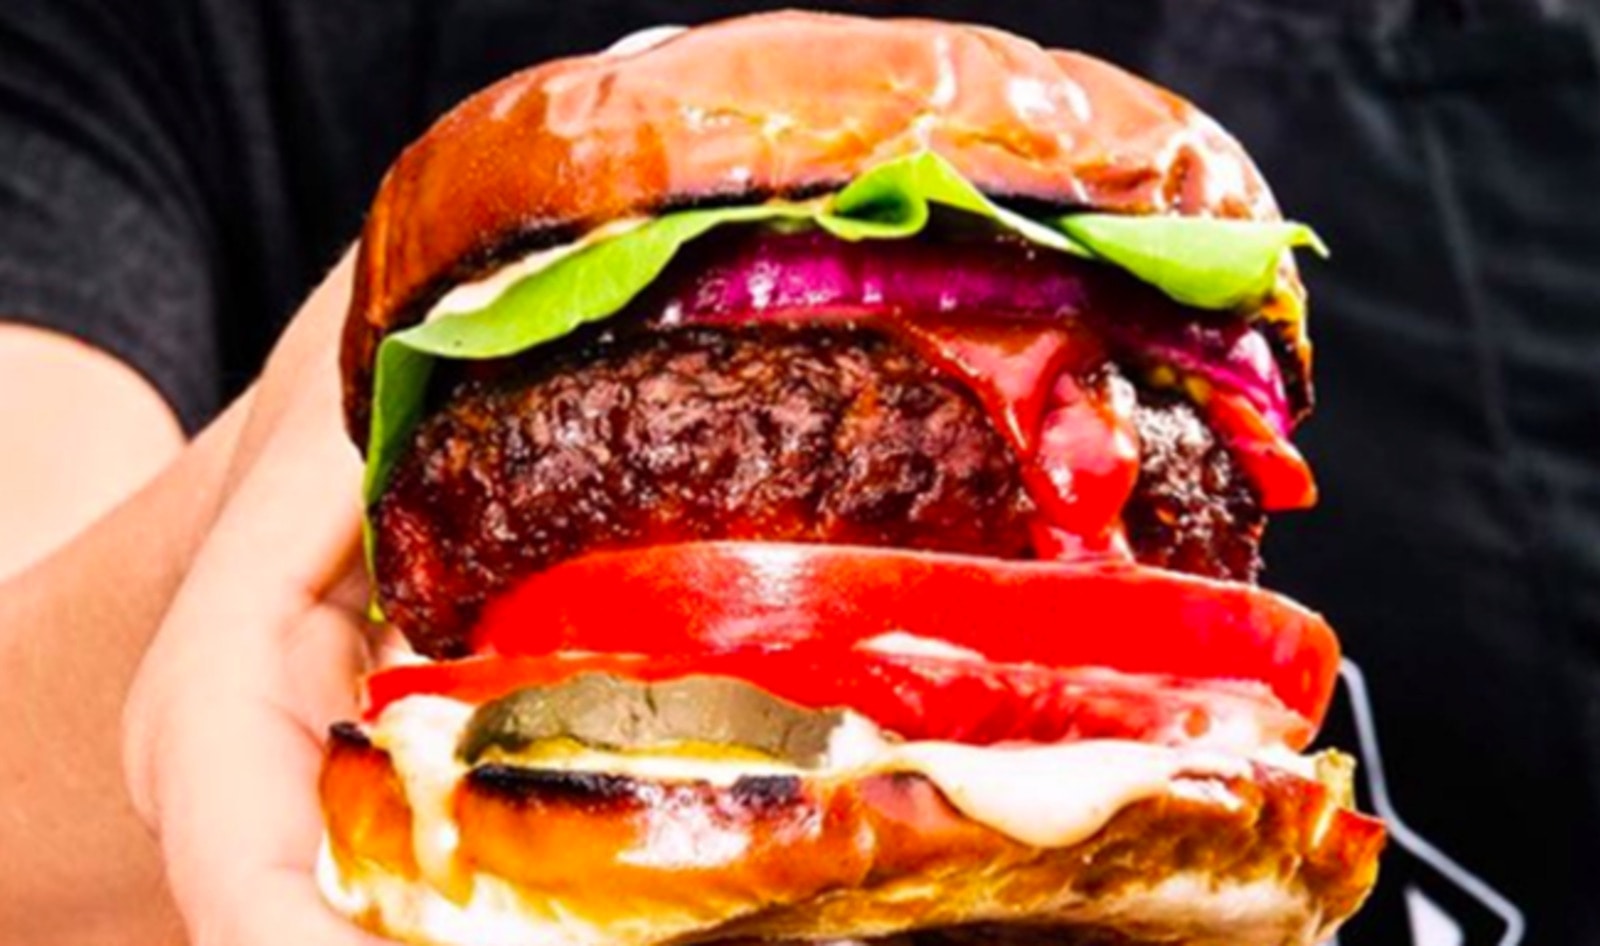 Vegan Eatery Focused Solely on Beyond Burgers Opens in London